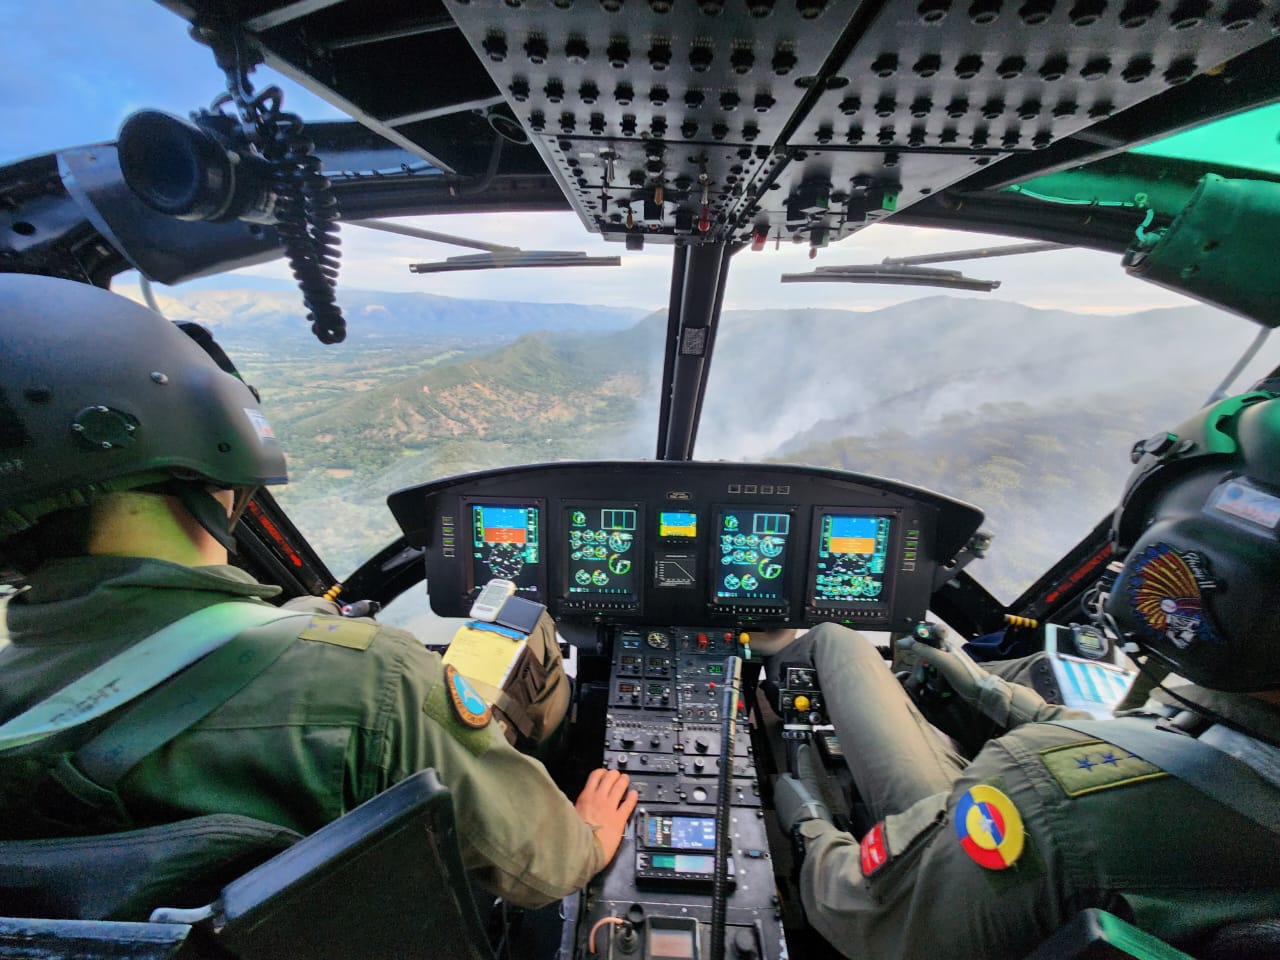  Incendio forestal en zona rural tolimense, está siendo extinguido desde el aire por la Fuerza Aeroespacial Colombiana